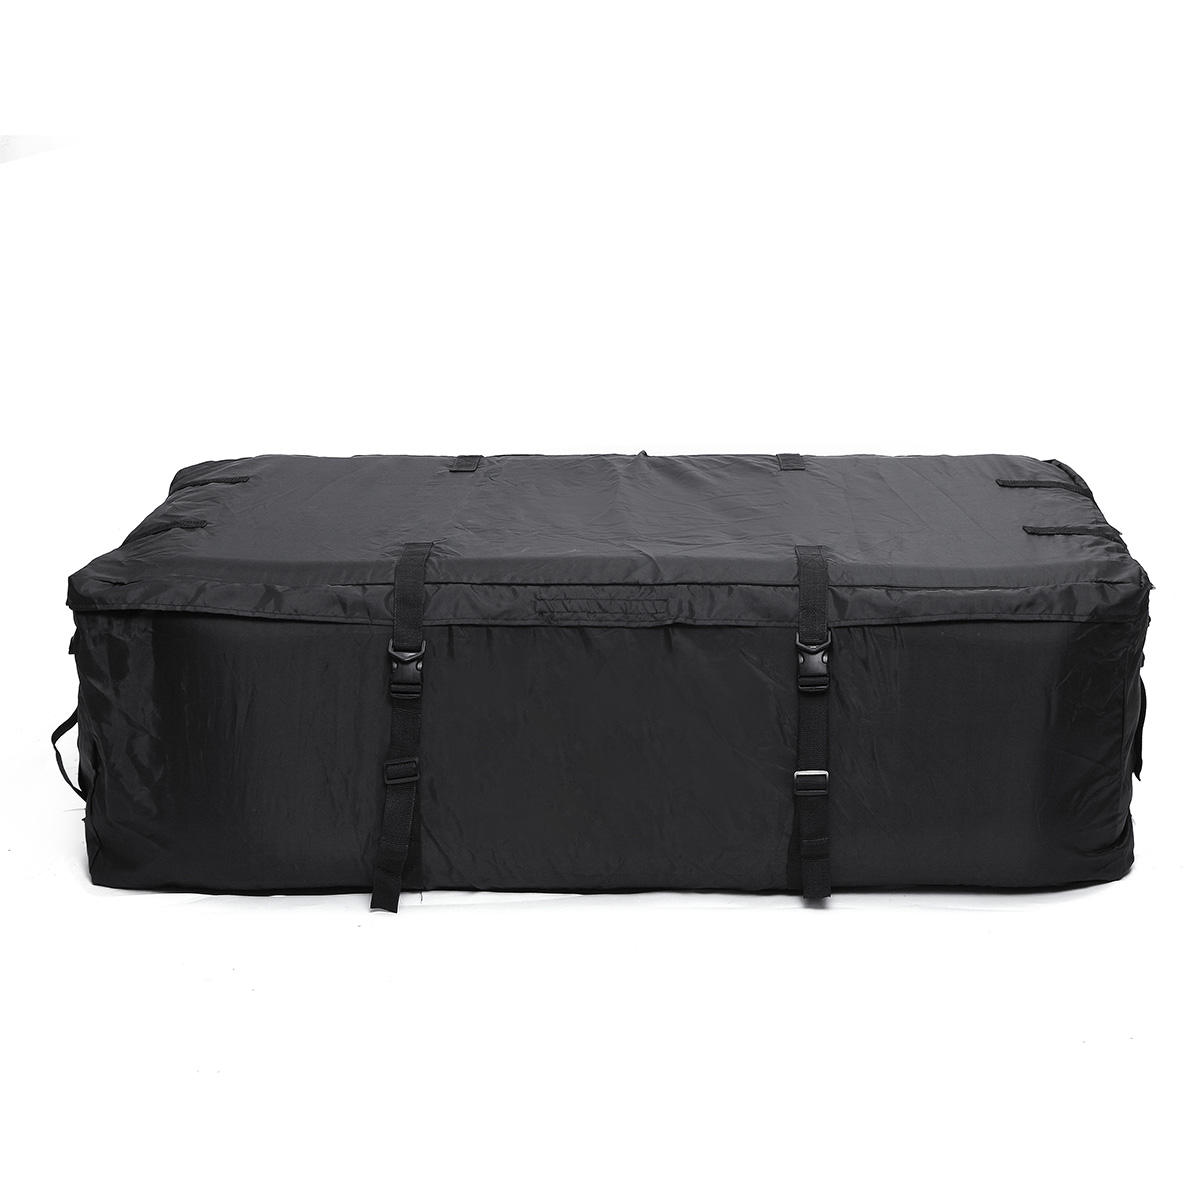 145*80*45cm car trunk cargo roof top carrier bag rack storage bag luggage rooftop waterproof ...